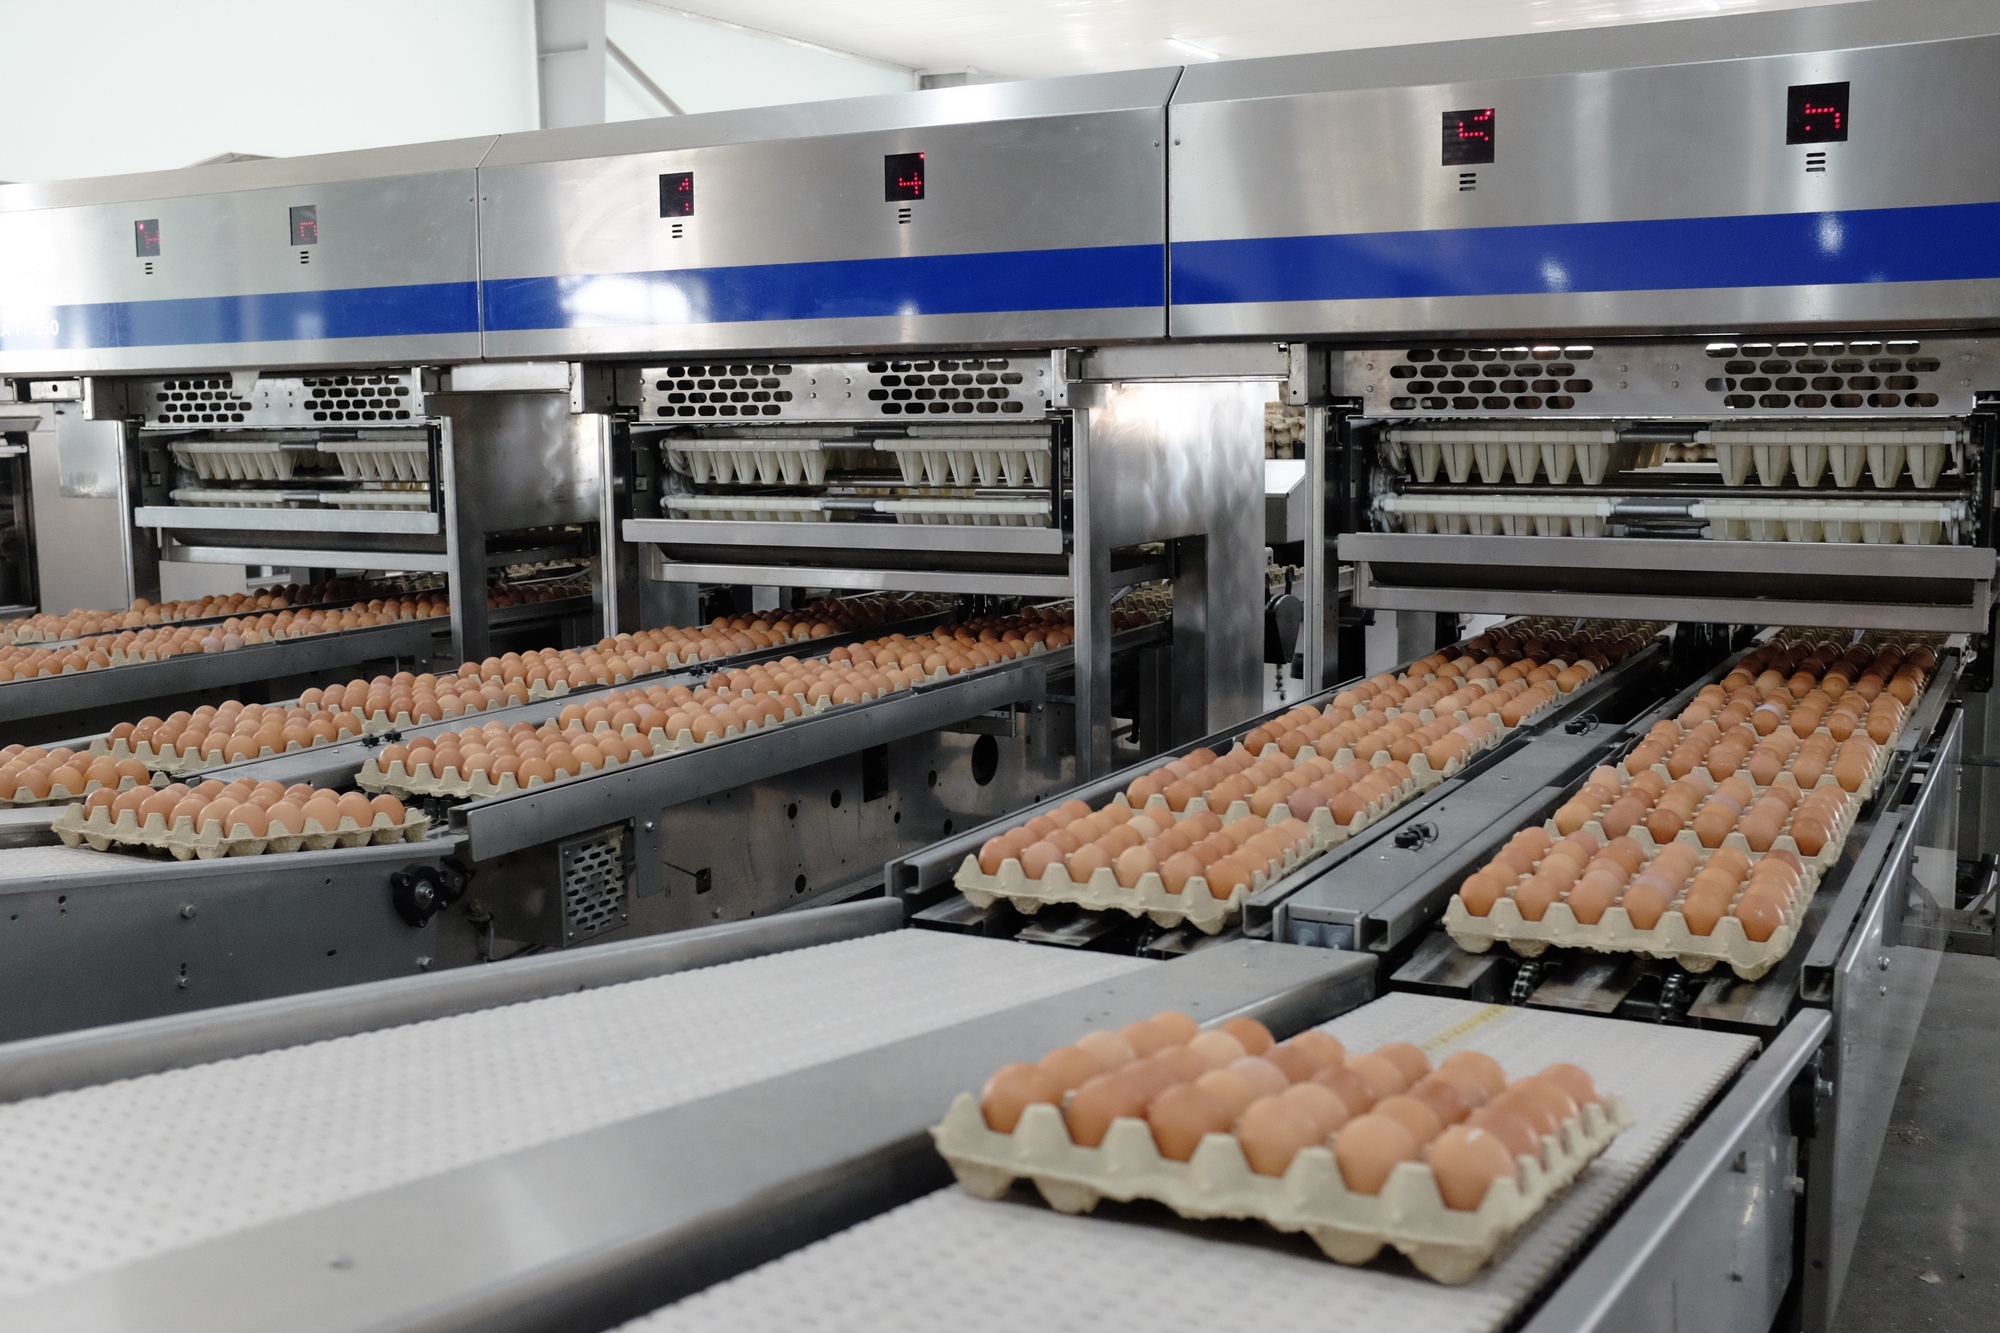 Hòa Phát trở thành công ty bán trứng lớn nhất miền Bắc, bán 1 triệu quả/ngày - Ảnh 1.